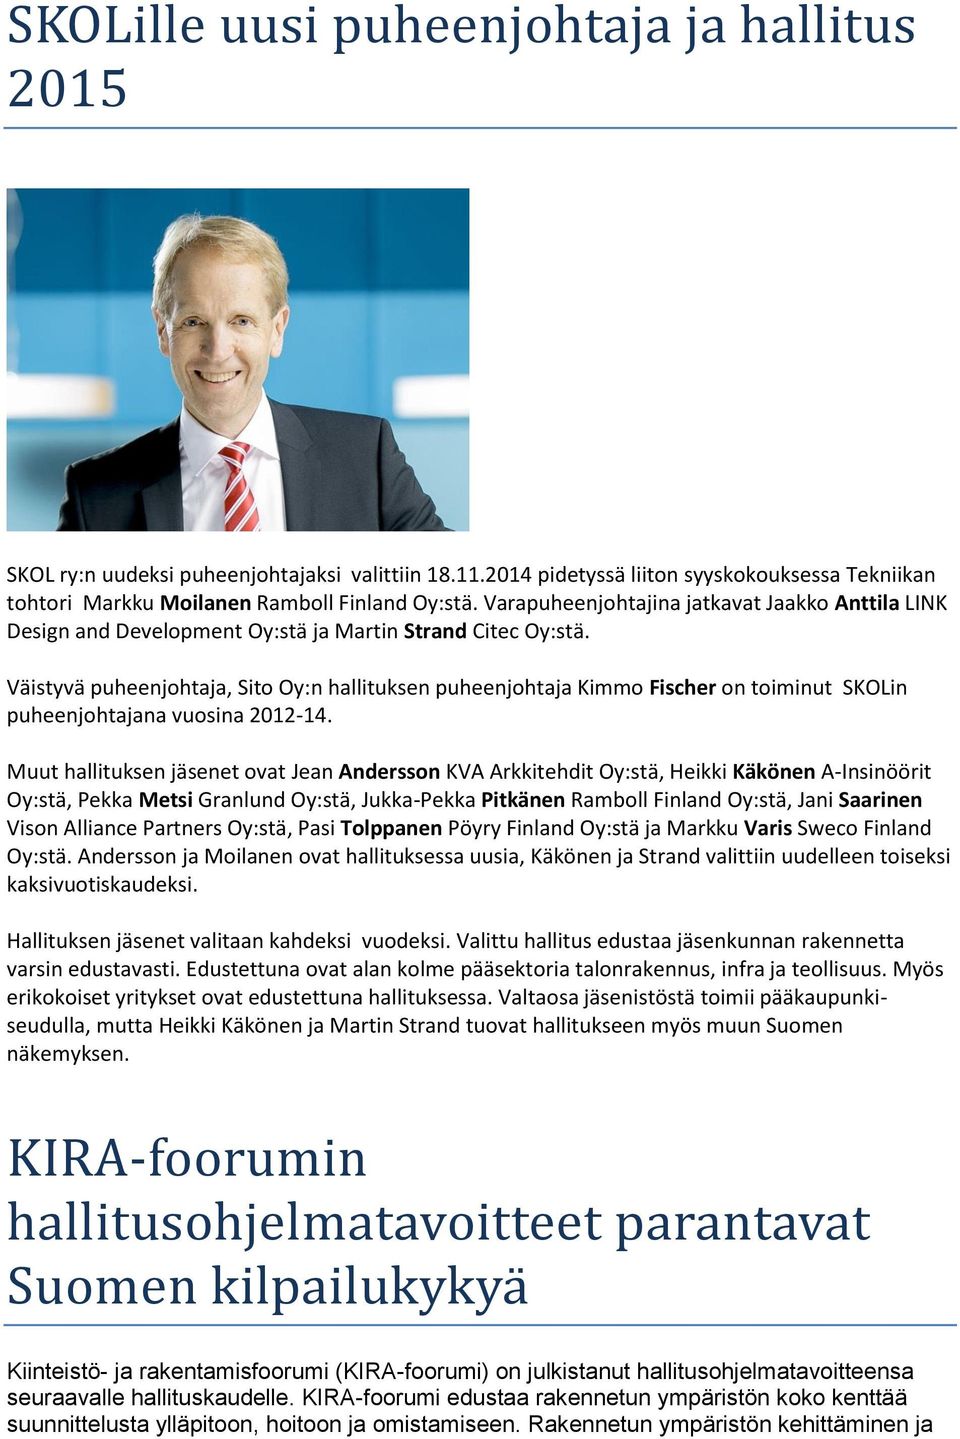 Väistyvä puheenjohtaja, Sito Oy:n hallituksen puheenjohtaja Kimmo Fischer on toiminut SKOLin puheenjohtajana vuosina 2012-14.